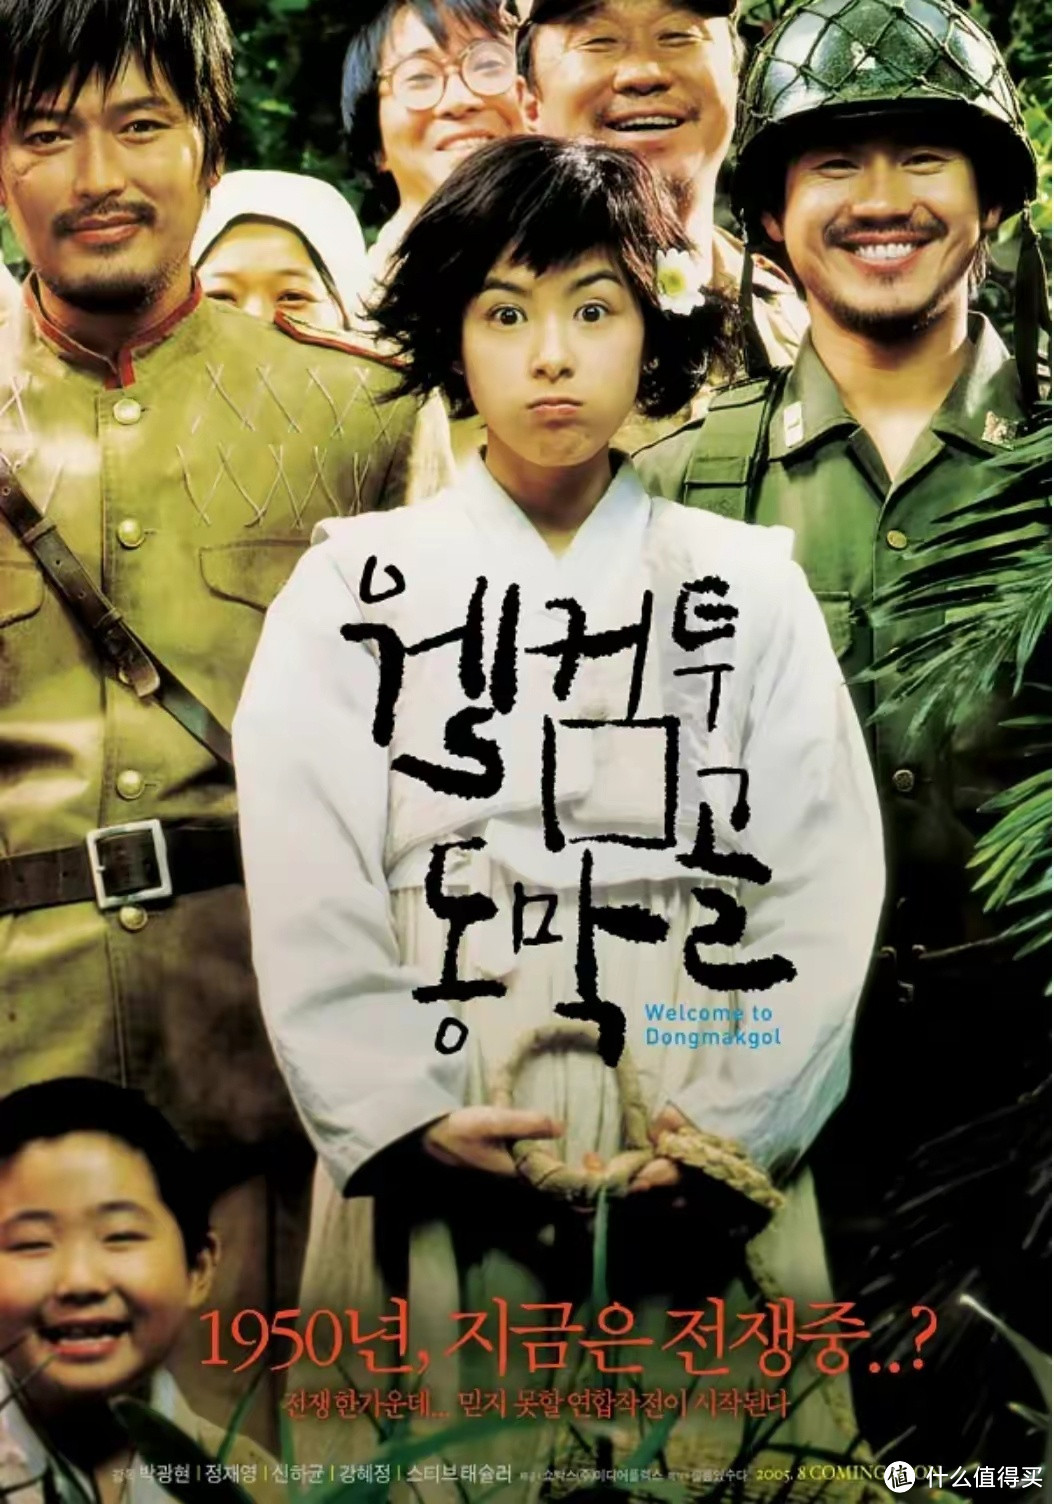 强烈推荐，韩国年度票房总冠军，奥斯卡最佳国际影片，最浪漫的战争片